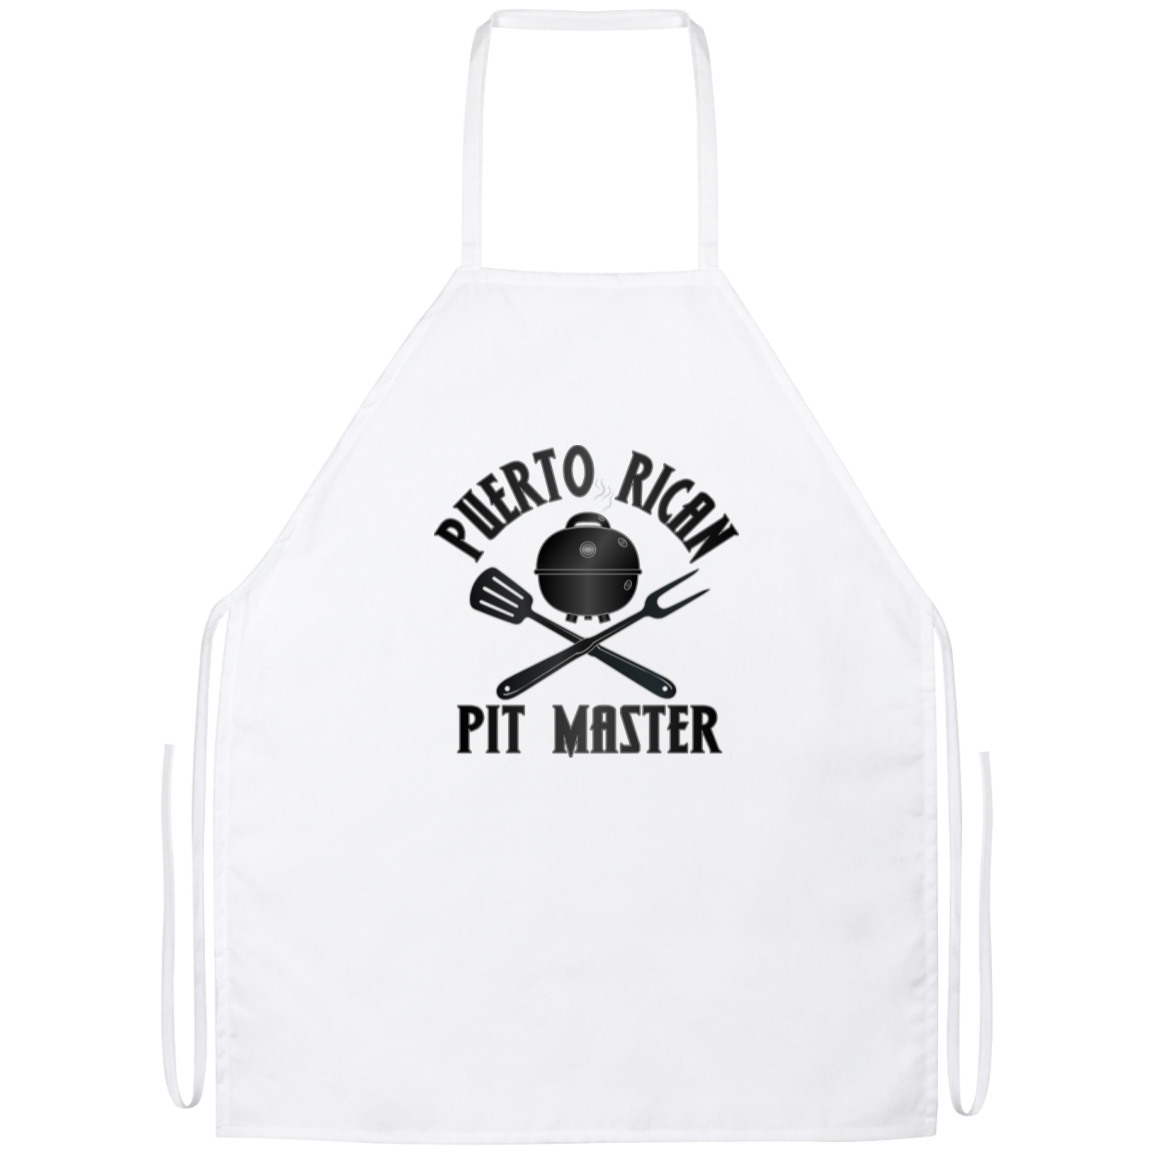 Puerto Rican Pit Master Apron - Puerto Rican Pride